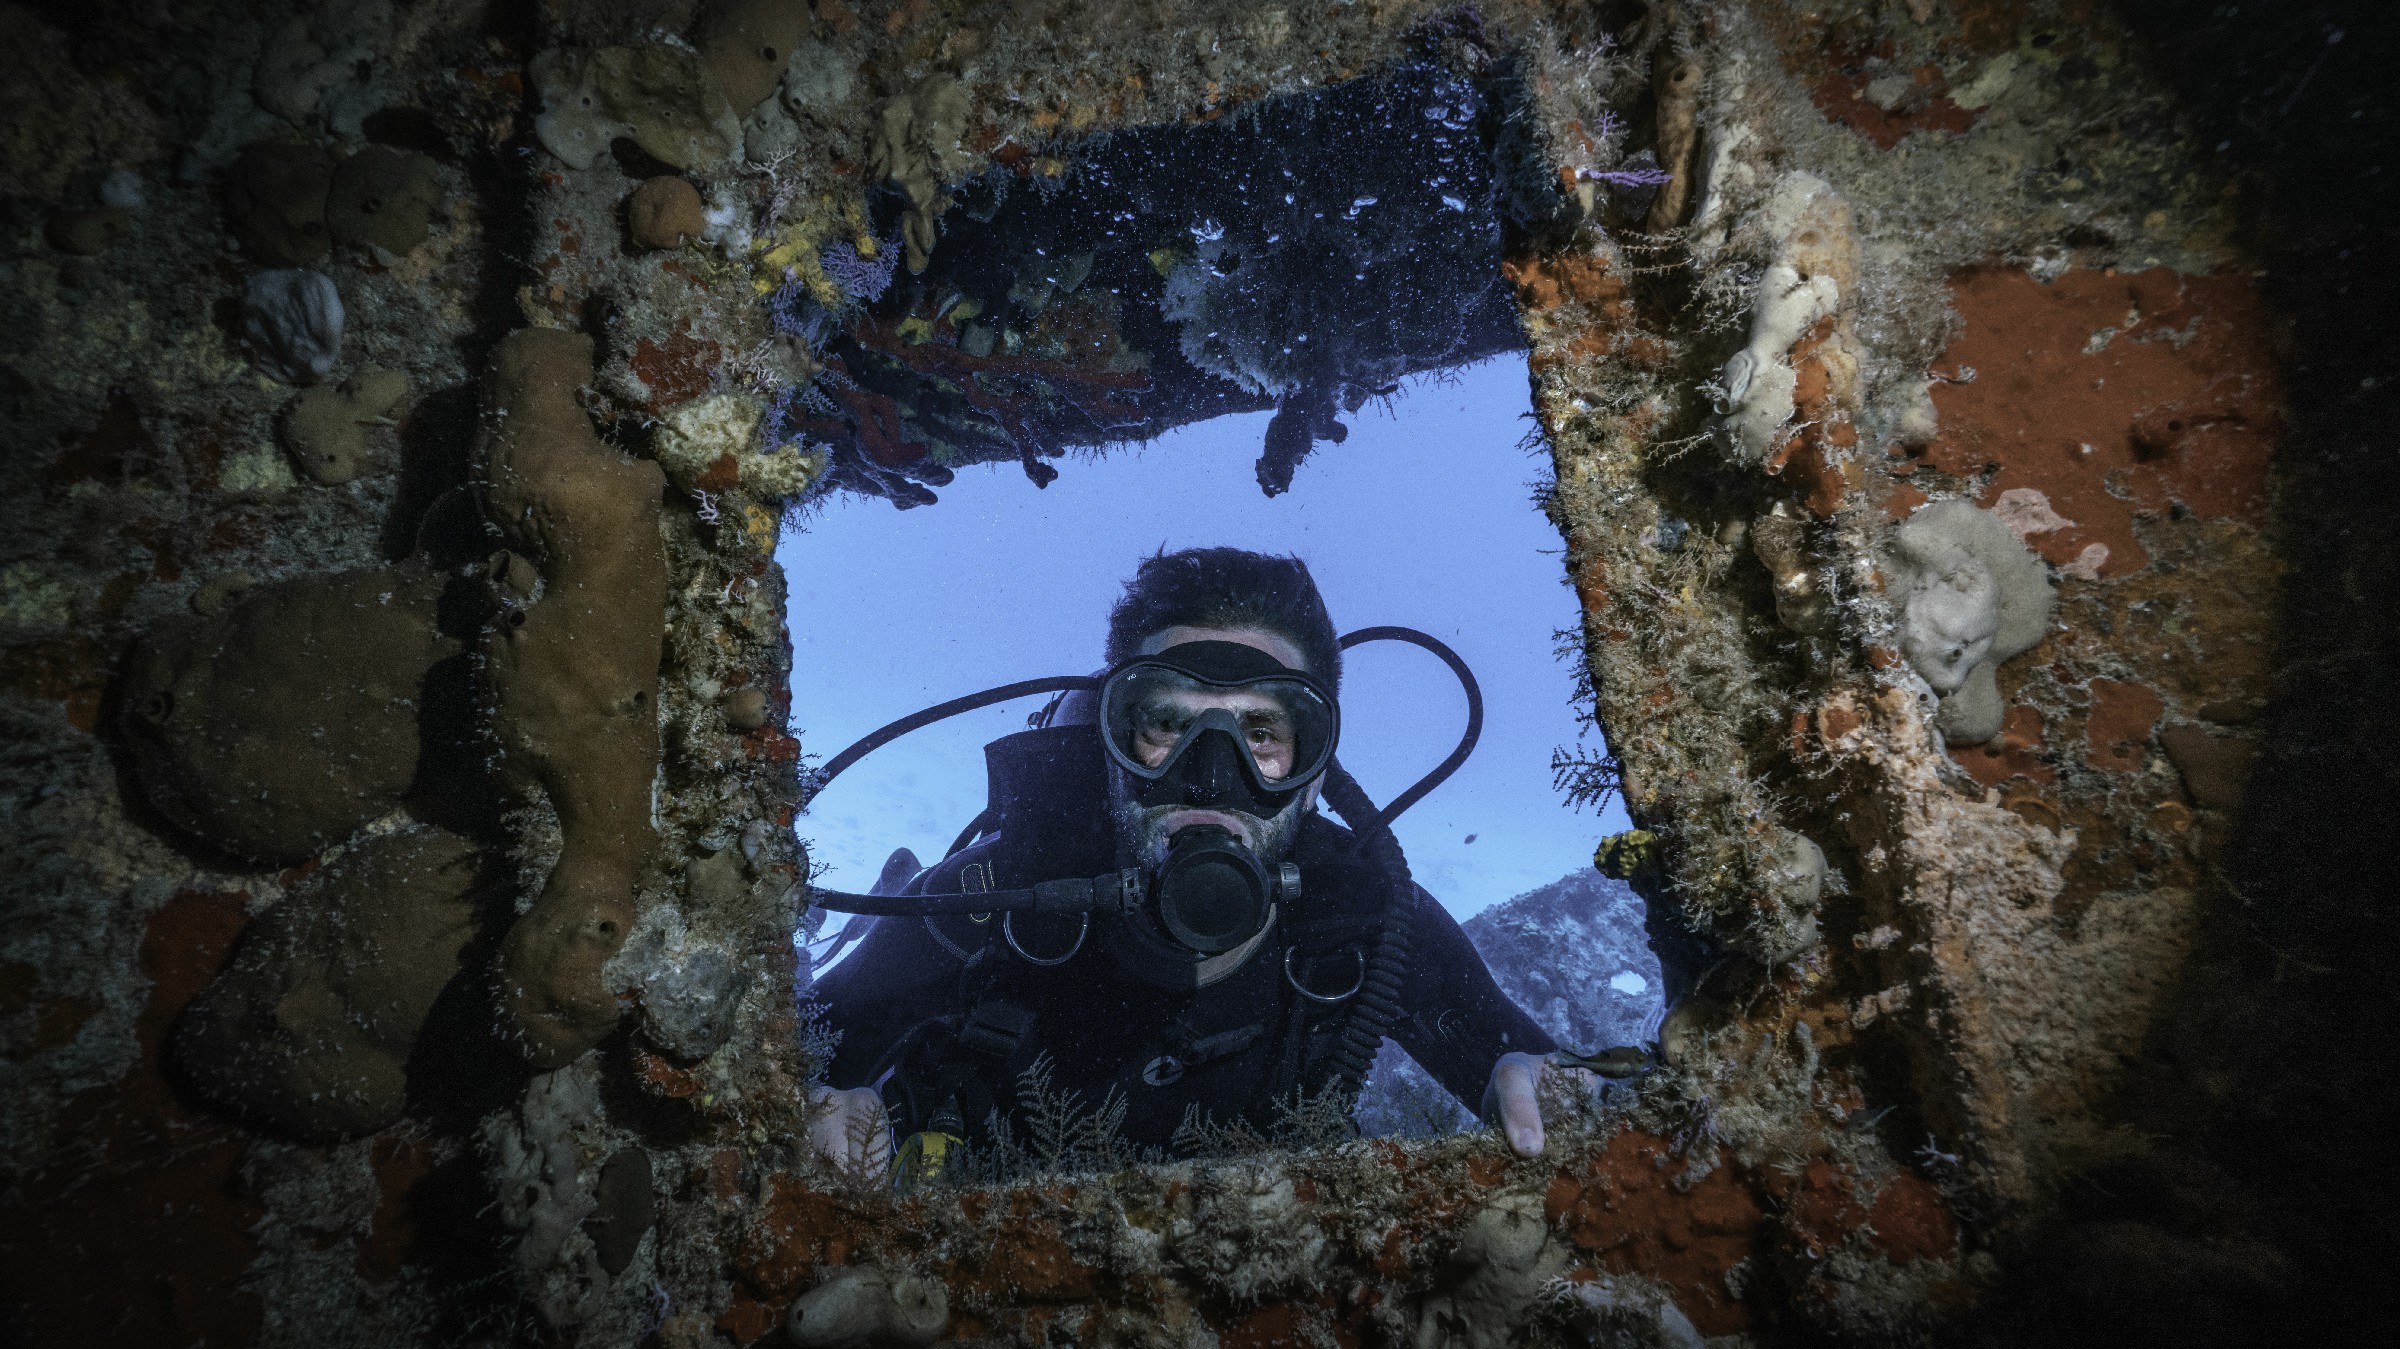 Underwater Inspection Works